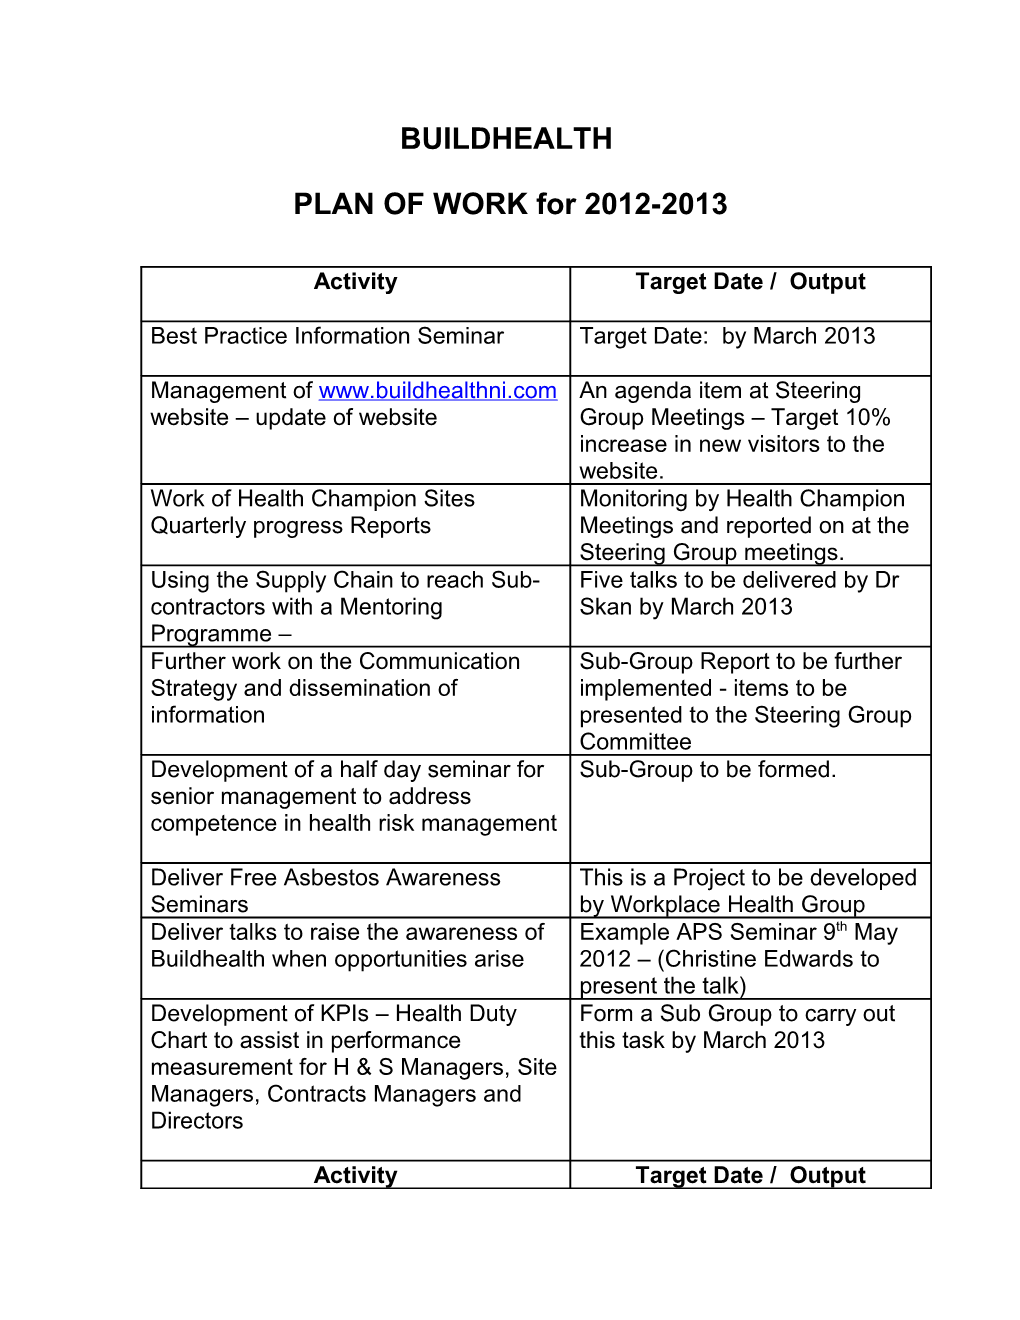 Buildhealth Steering Group Plan of Work 2010-11